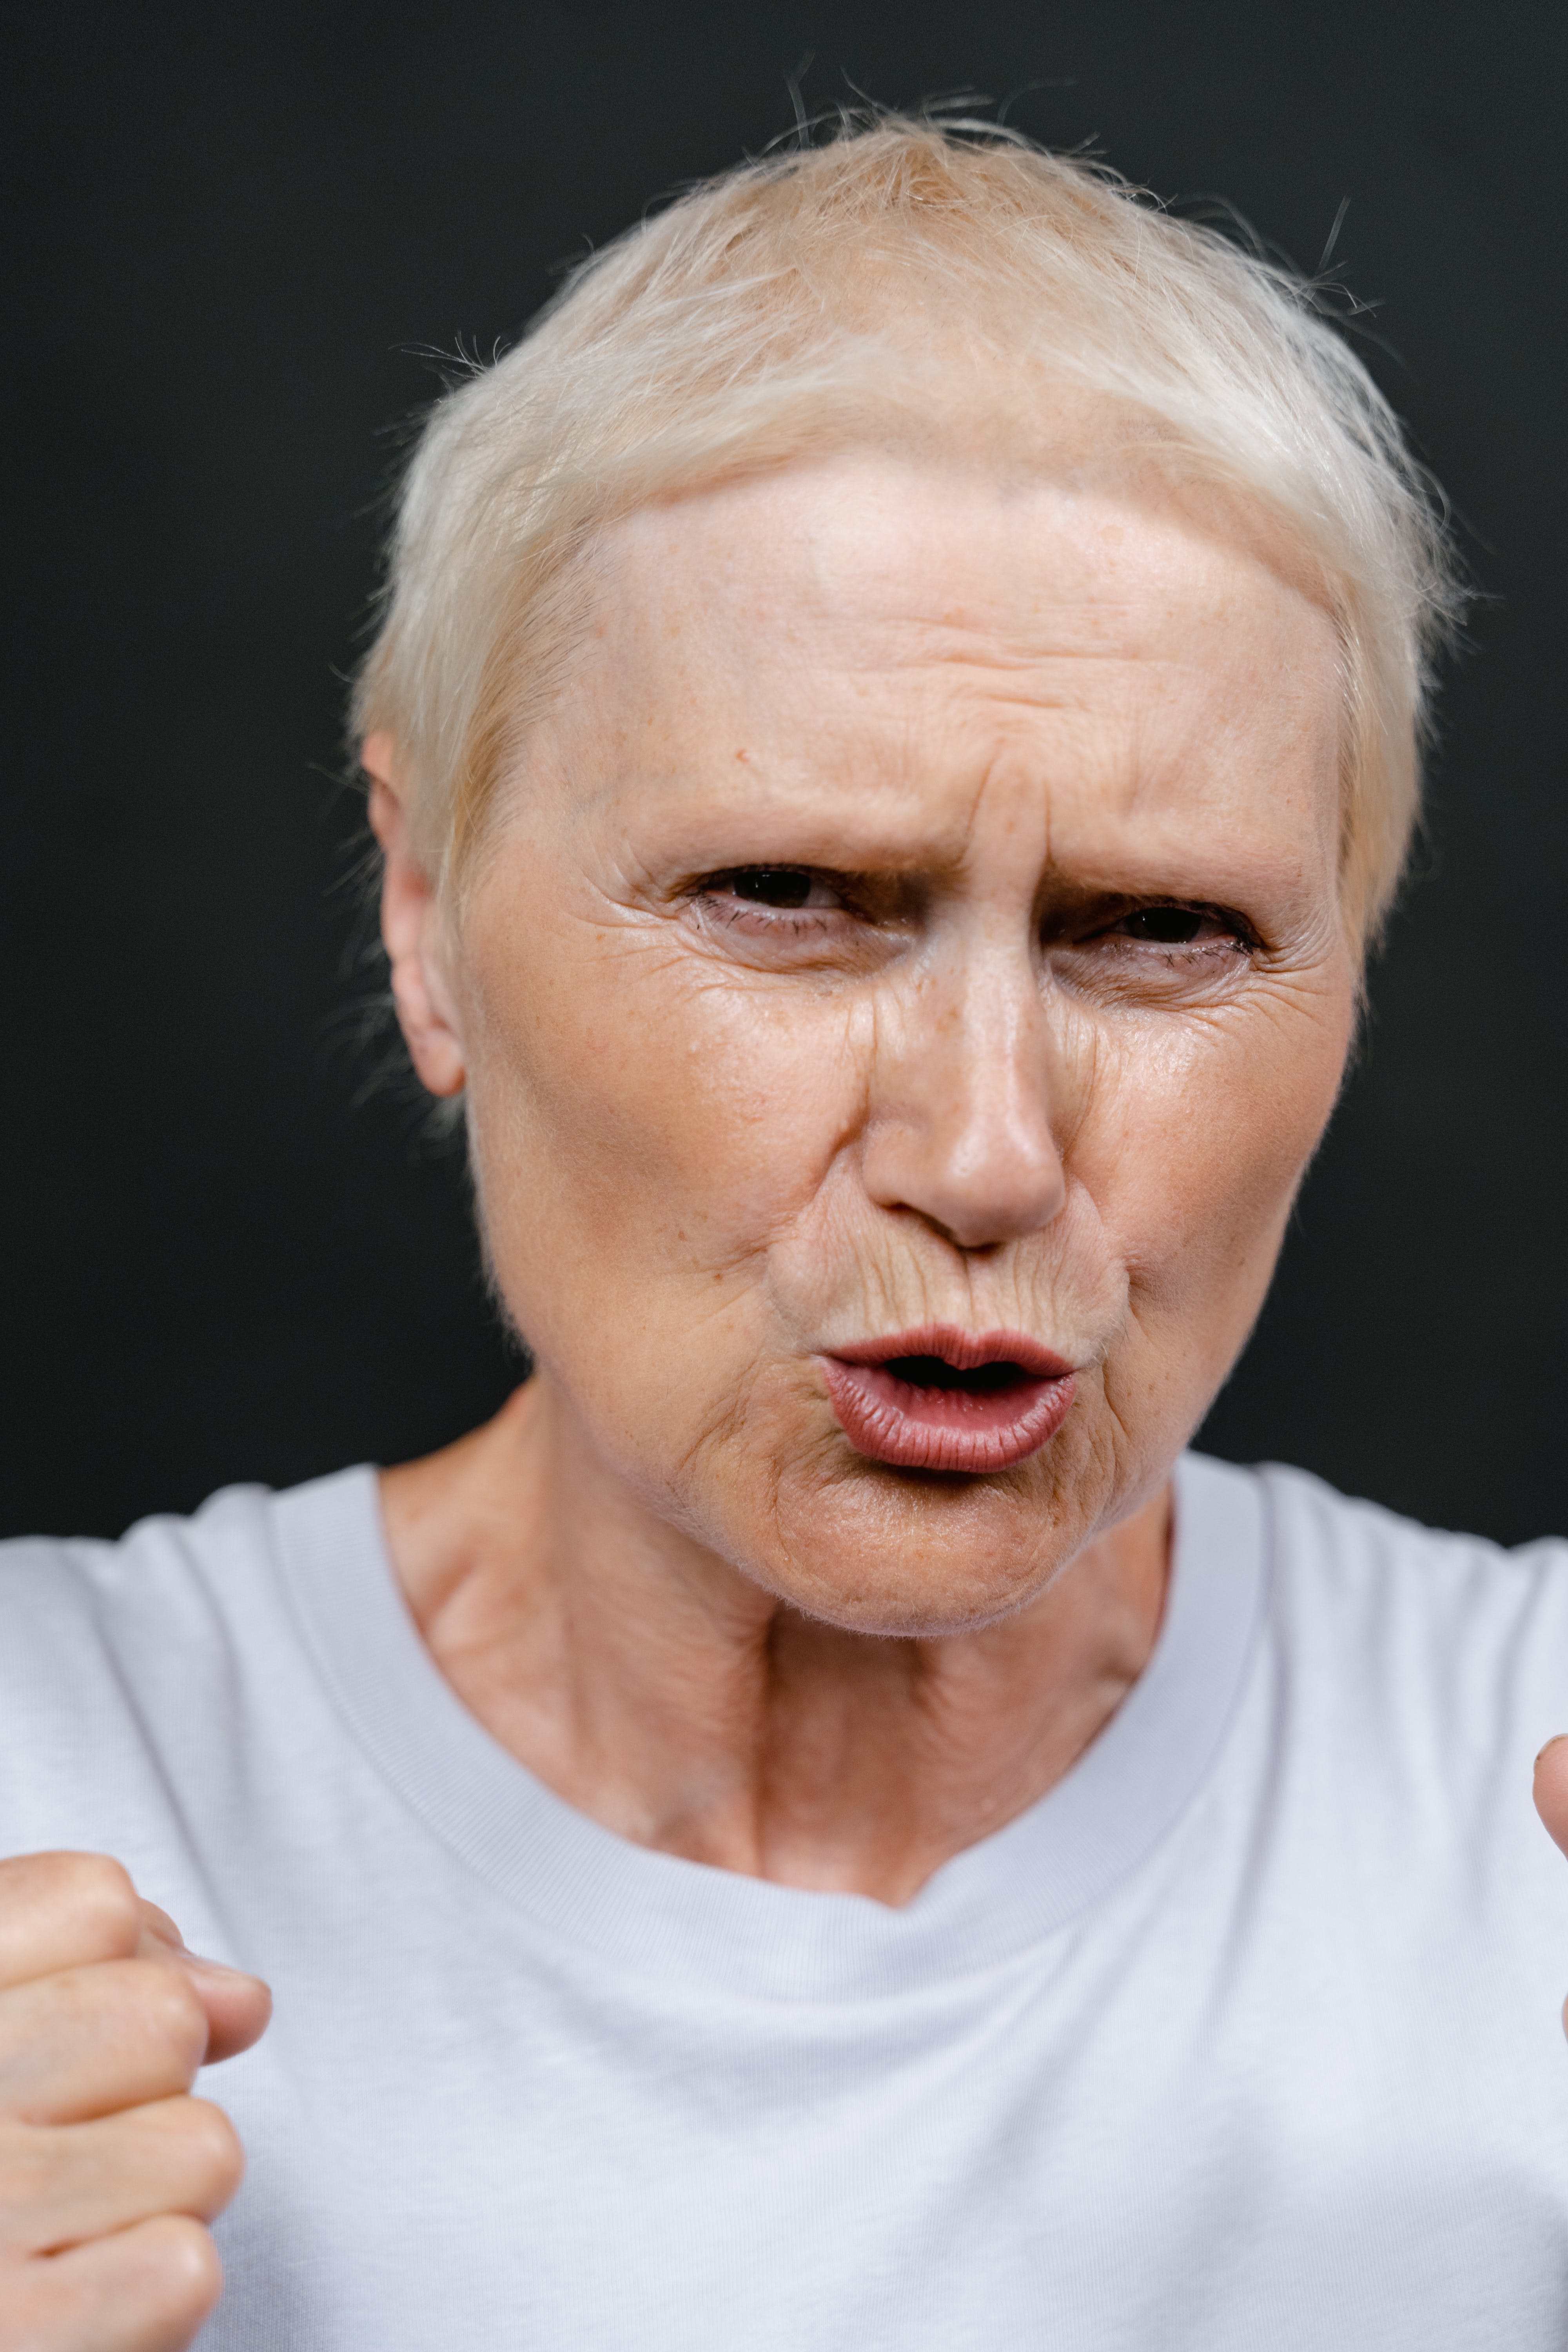 Eine ältere Frau, die verärgert aussieht | Quelle: Pexels